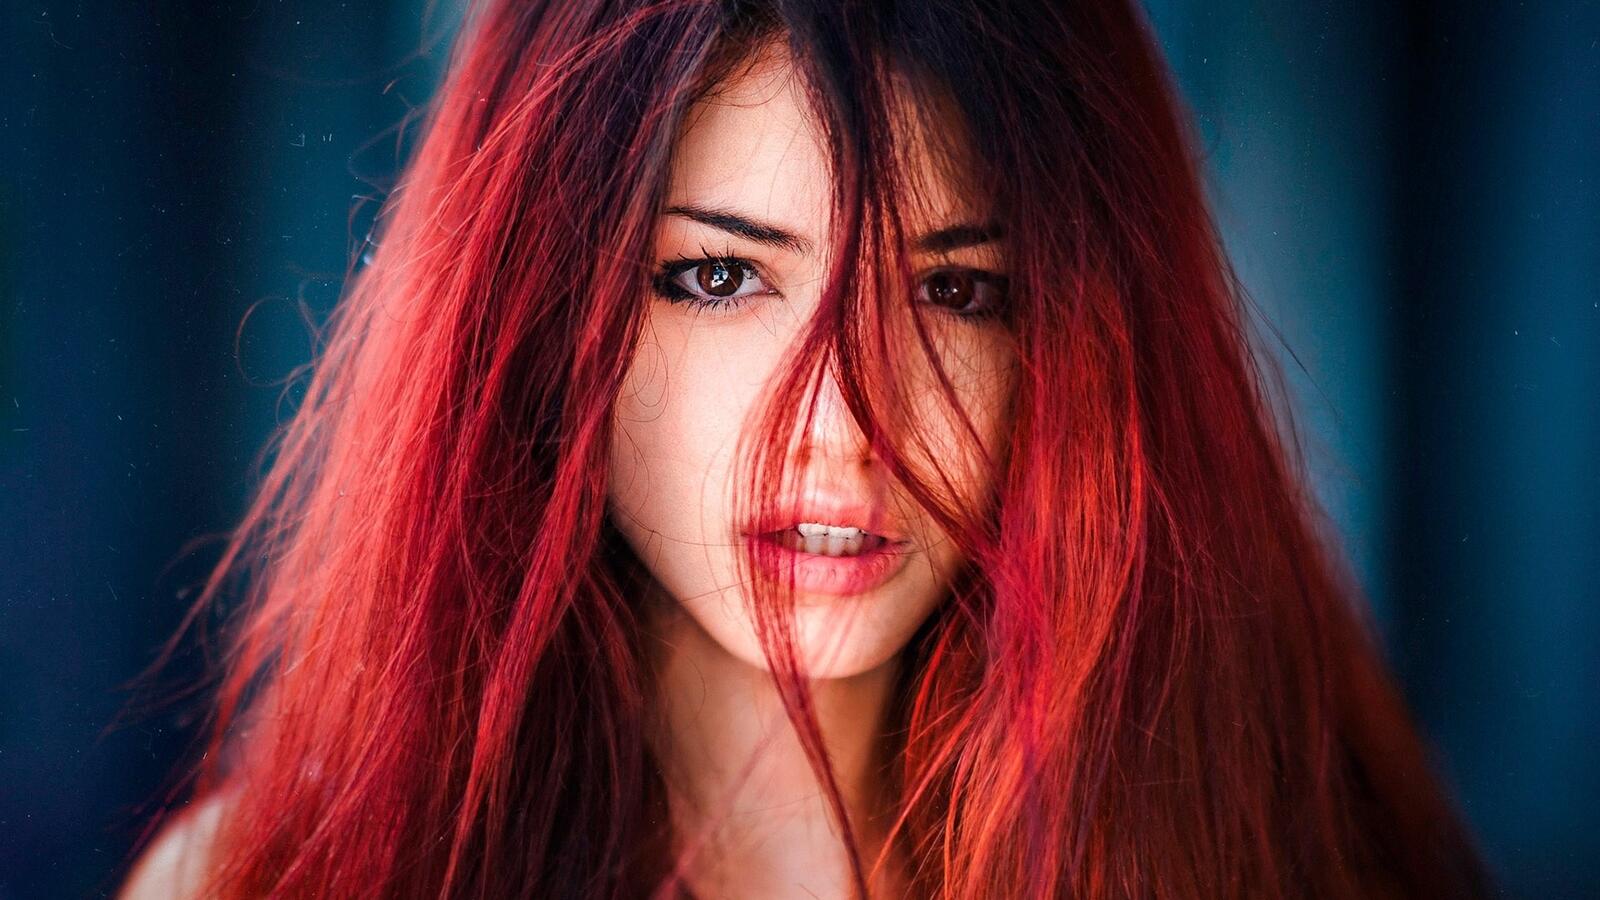 Бесплатное фото Рыжая красивая девушка с длинными волосами